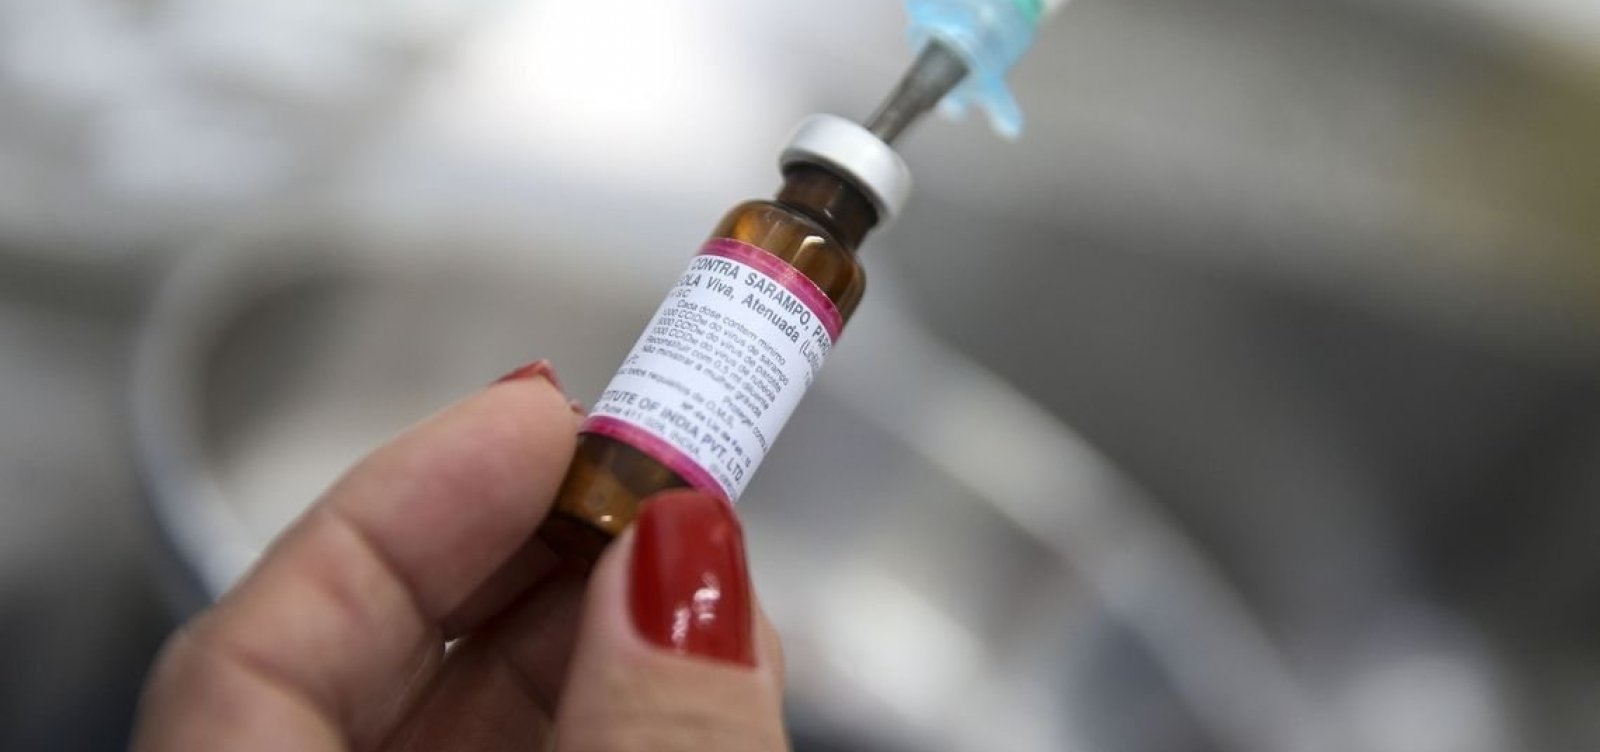 Com surto em três estados, Brasil pode perder selo de erradicação do sarampo